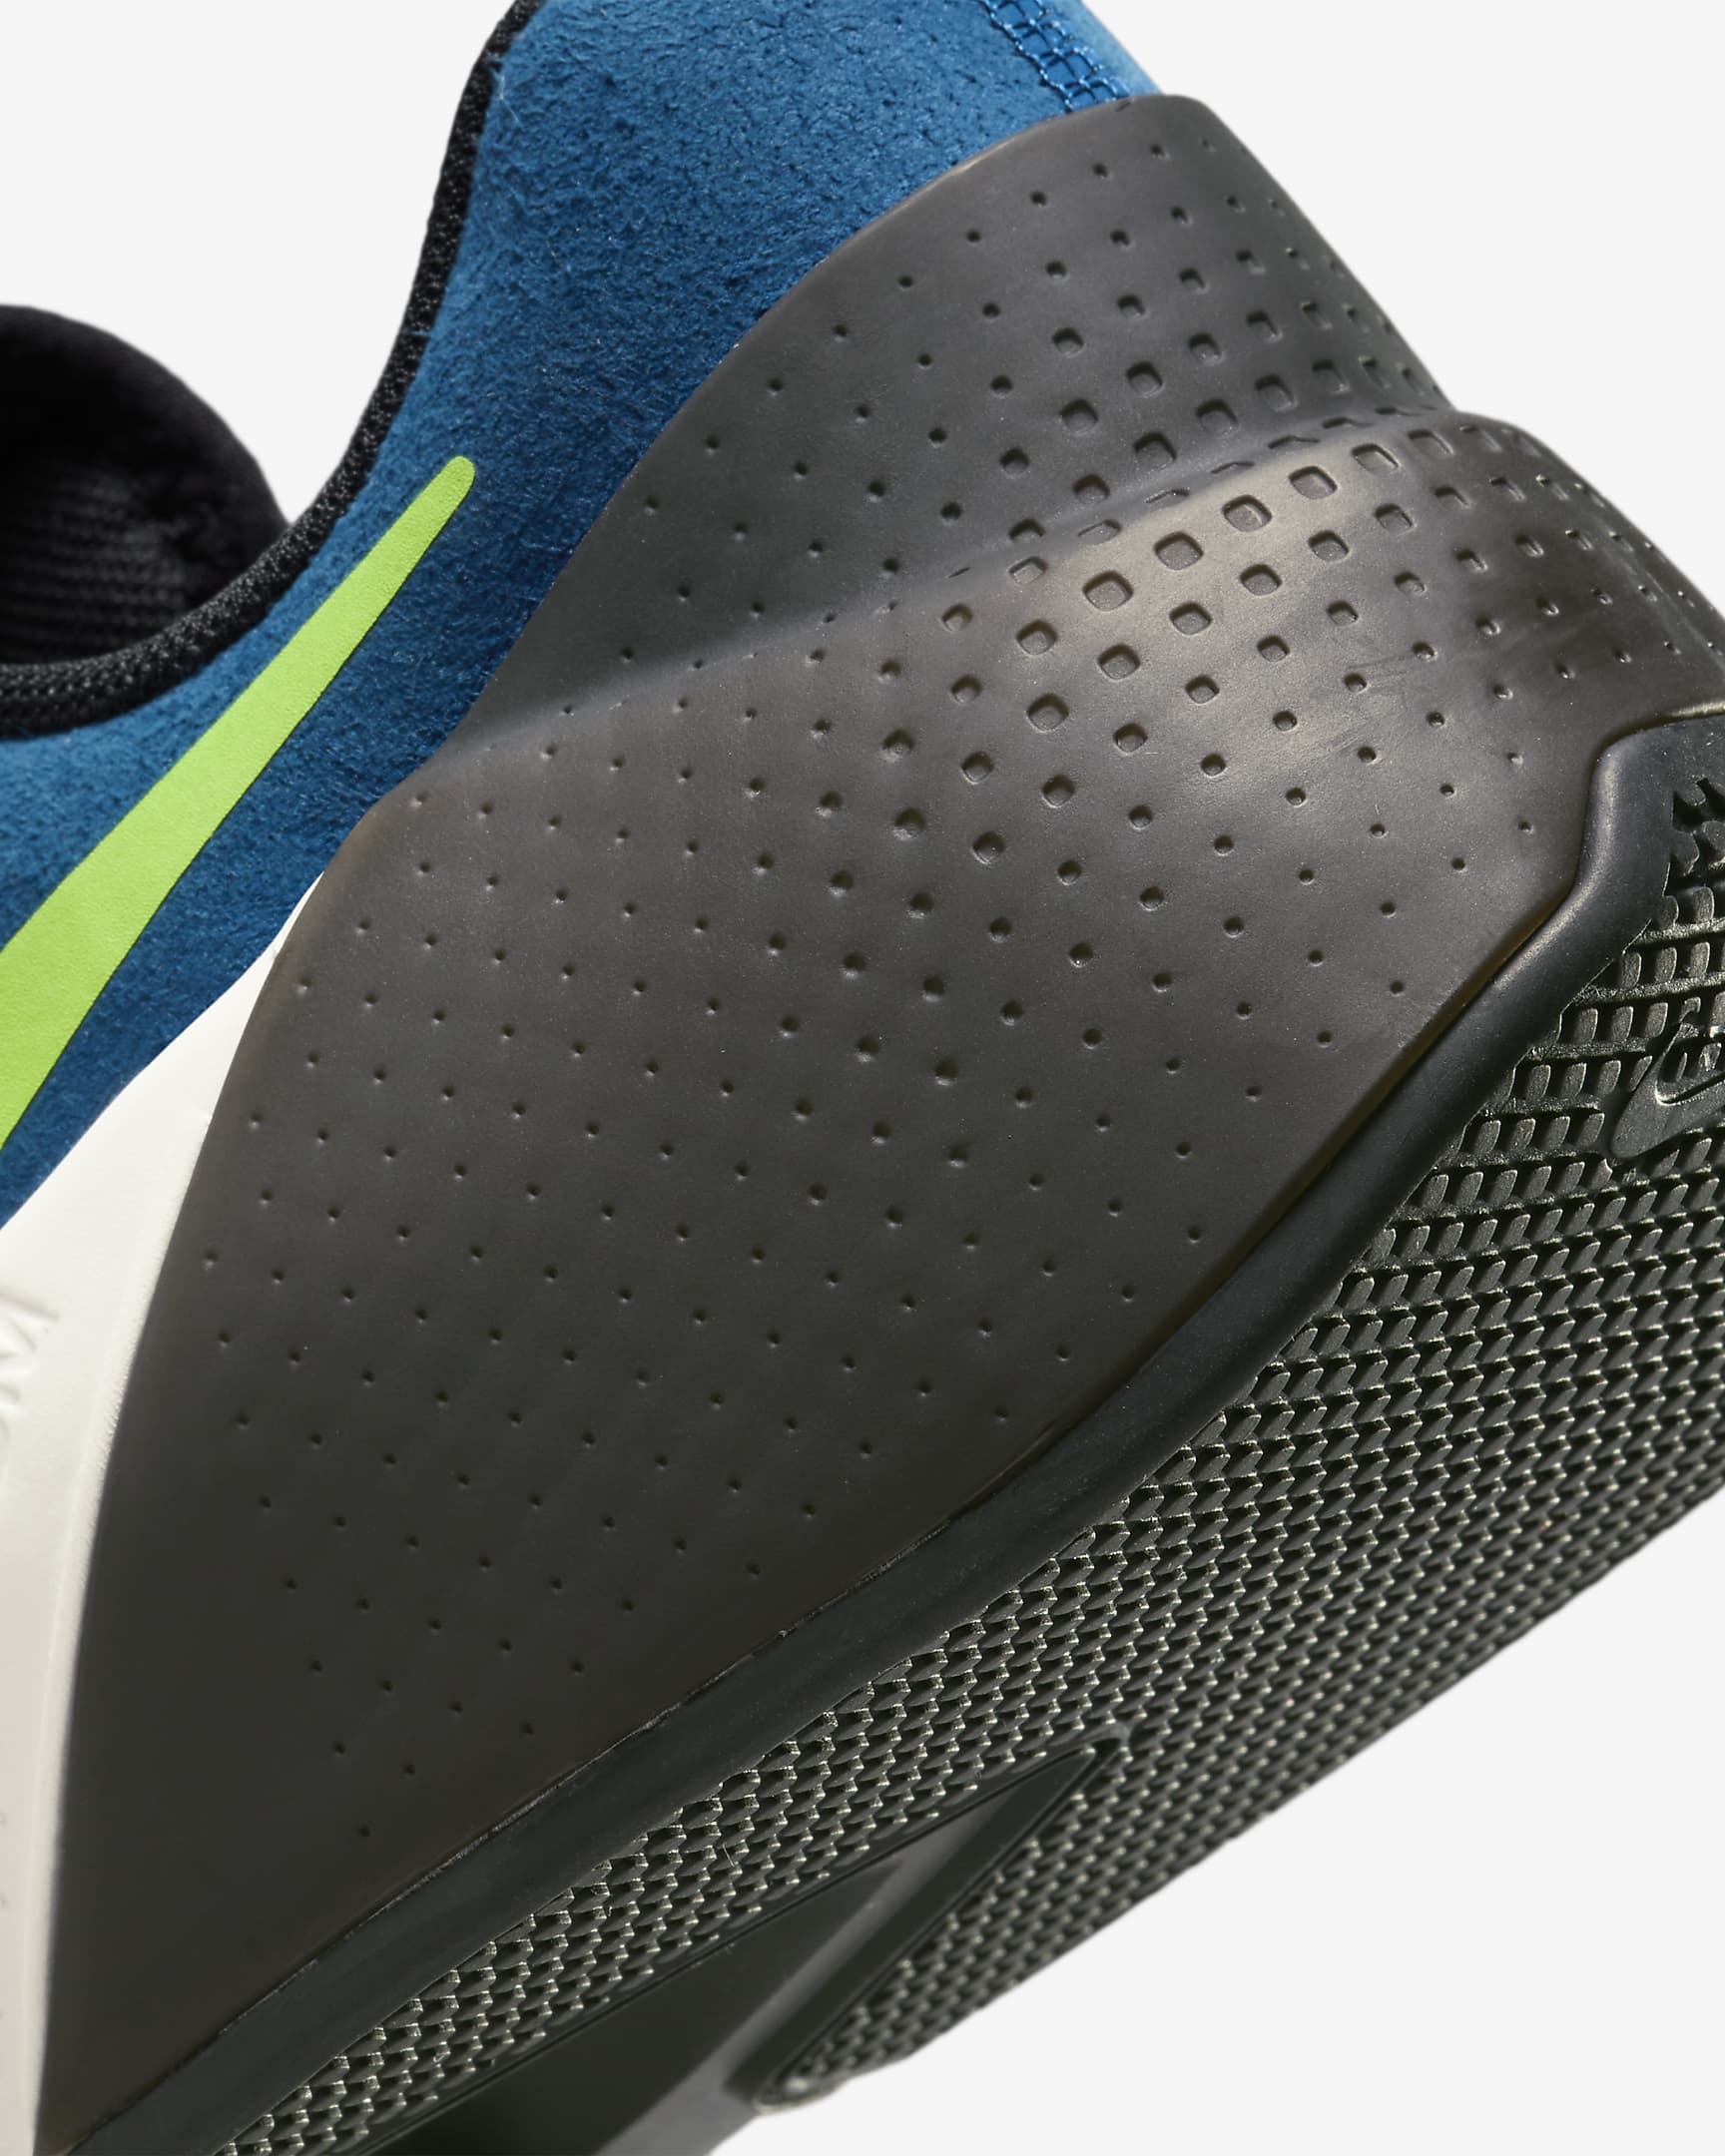 Nike Air Zoom TR 1-træningssko til mænd - Court Blue/sort/Platinum Tint/Green Strike